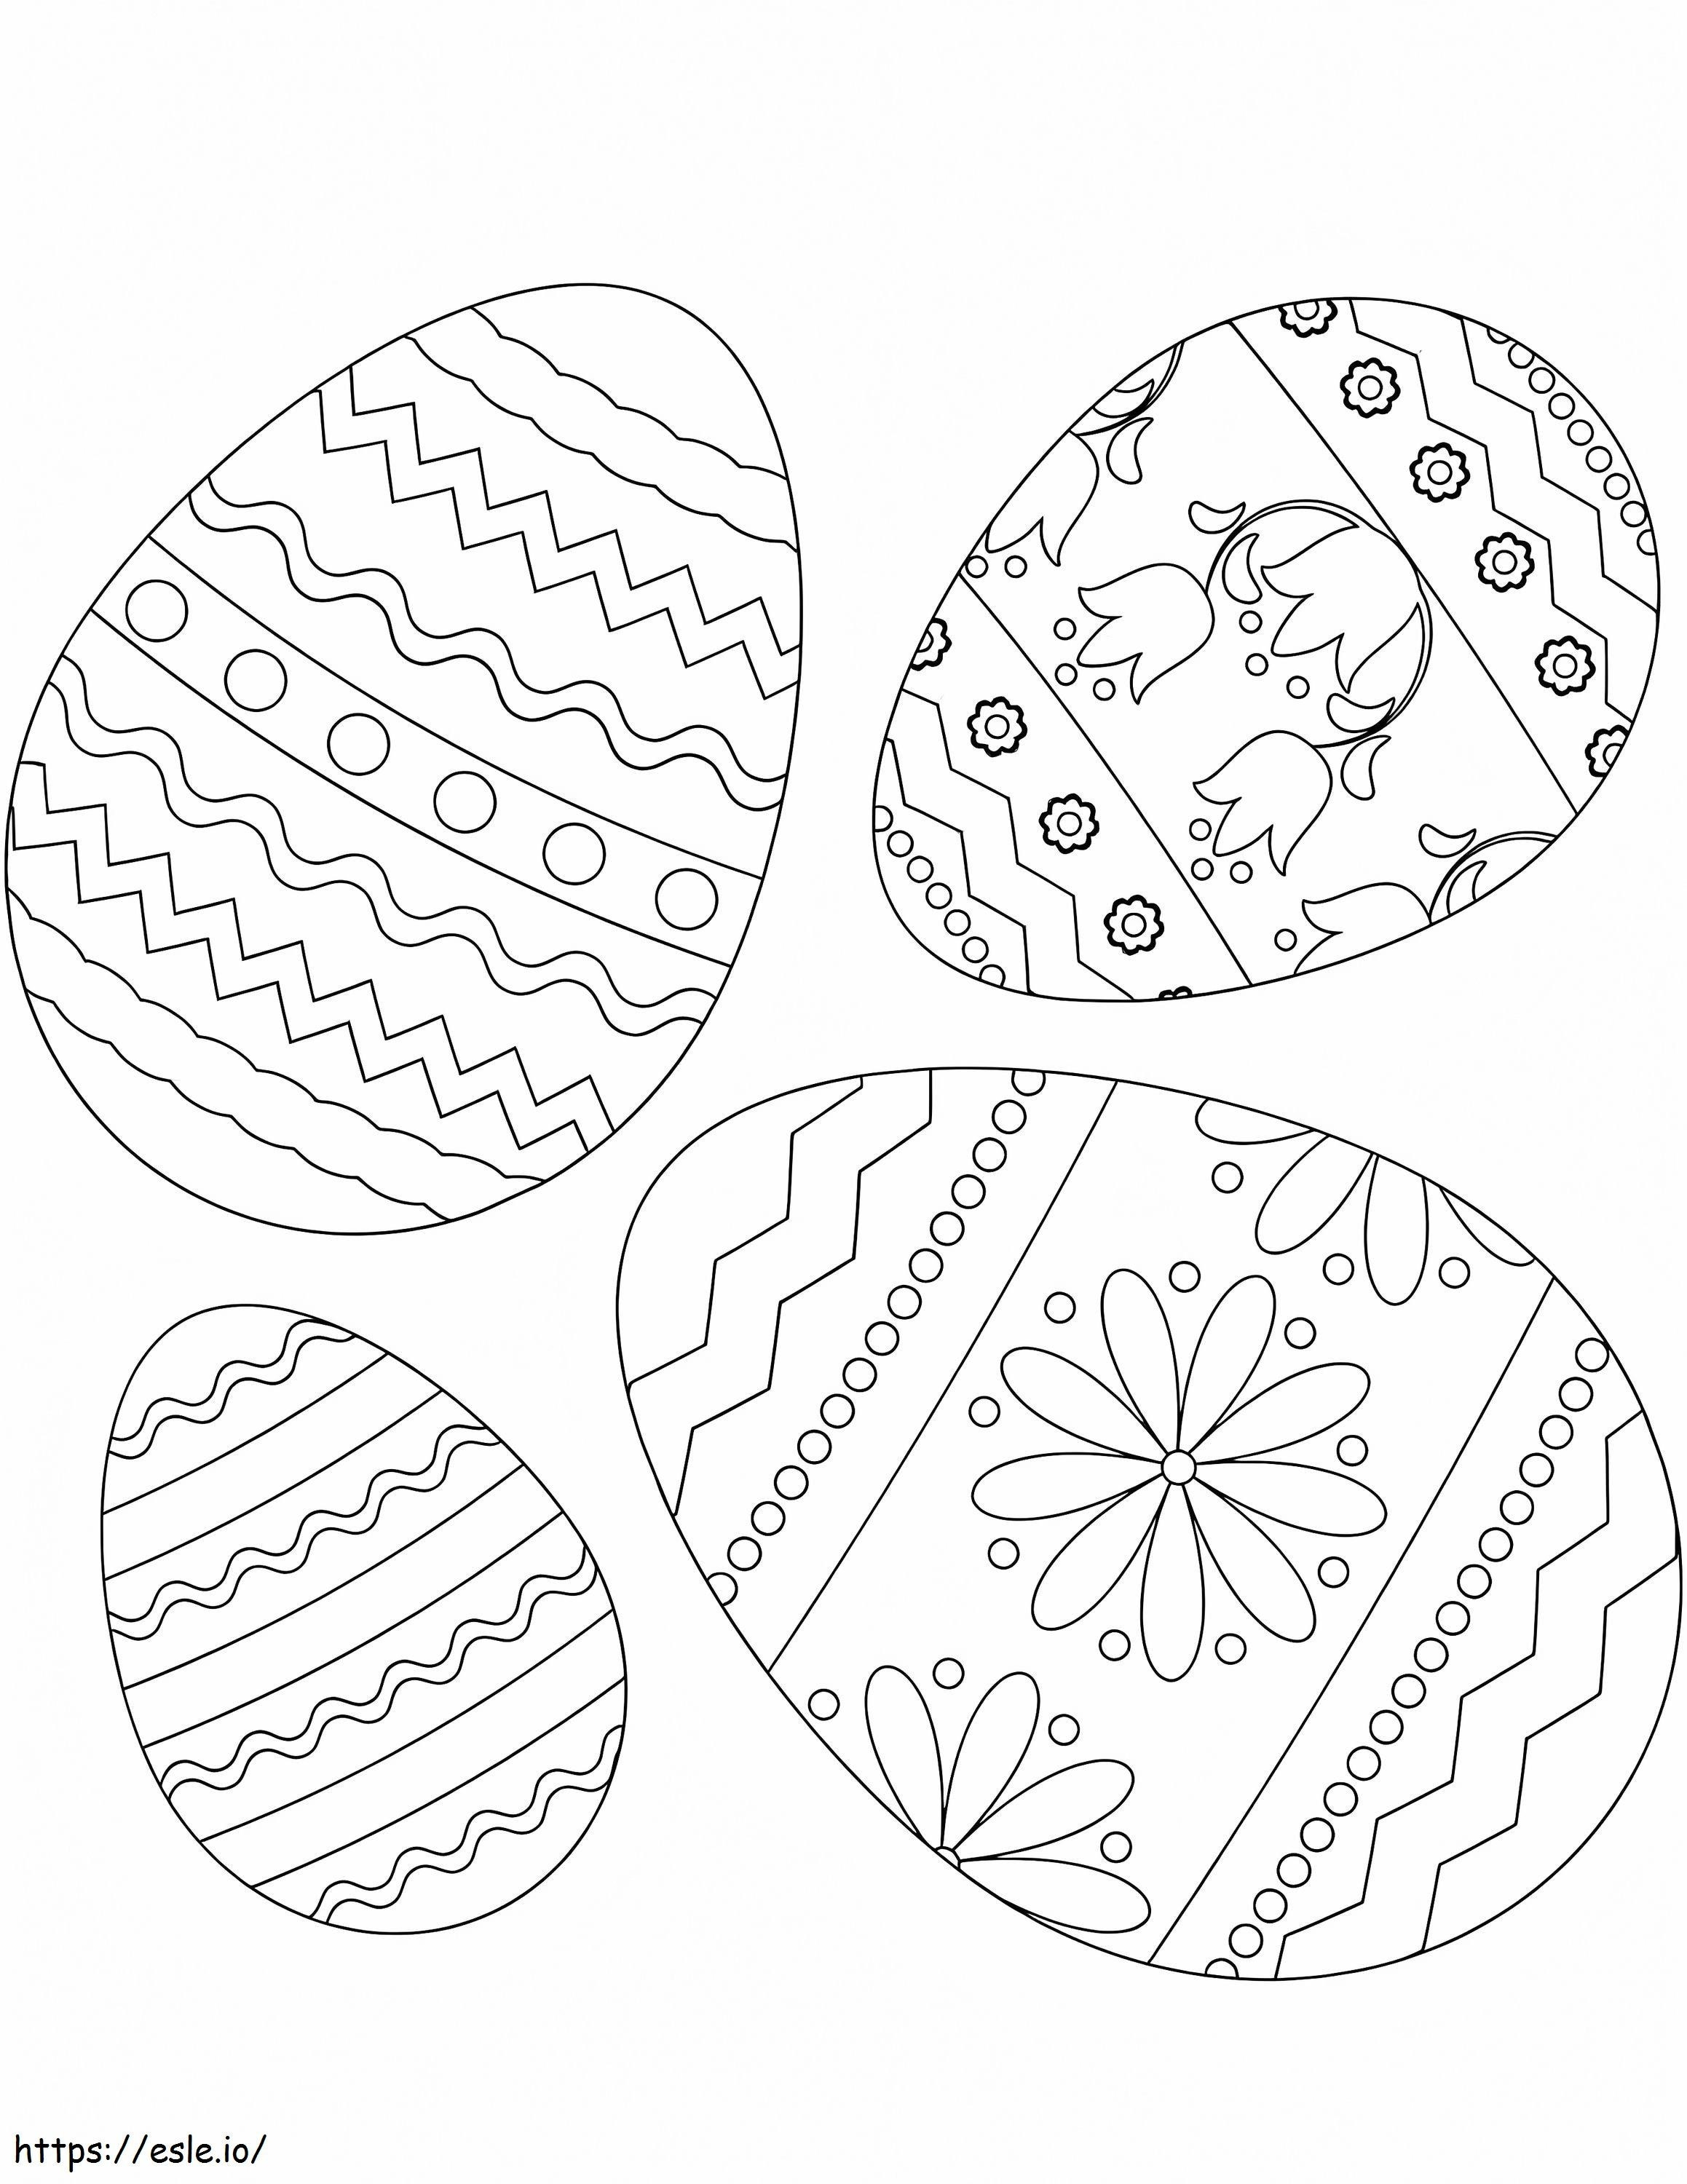 Coloriage Oeufs de Pâques 4 à imprimer dessin